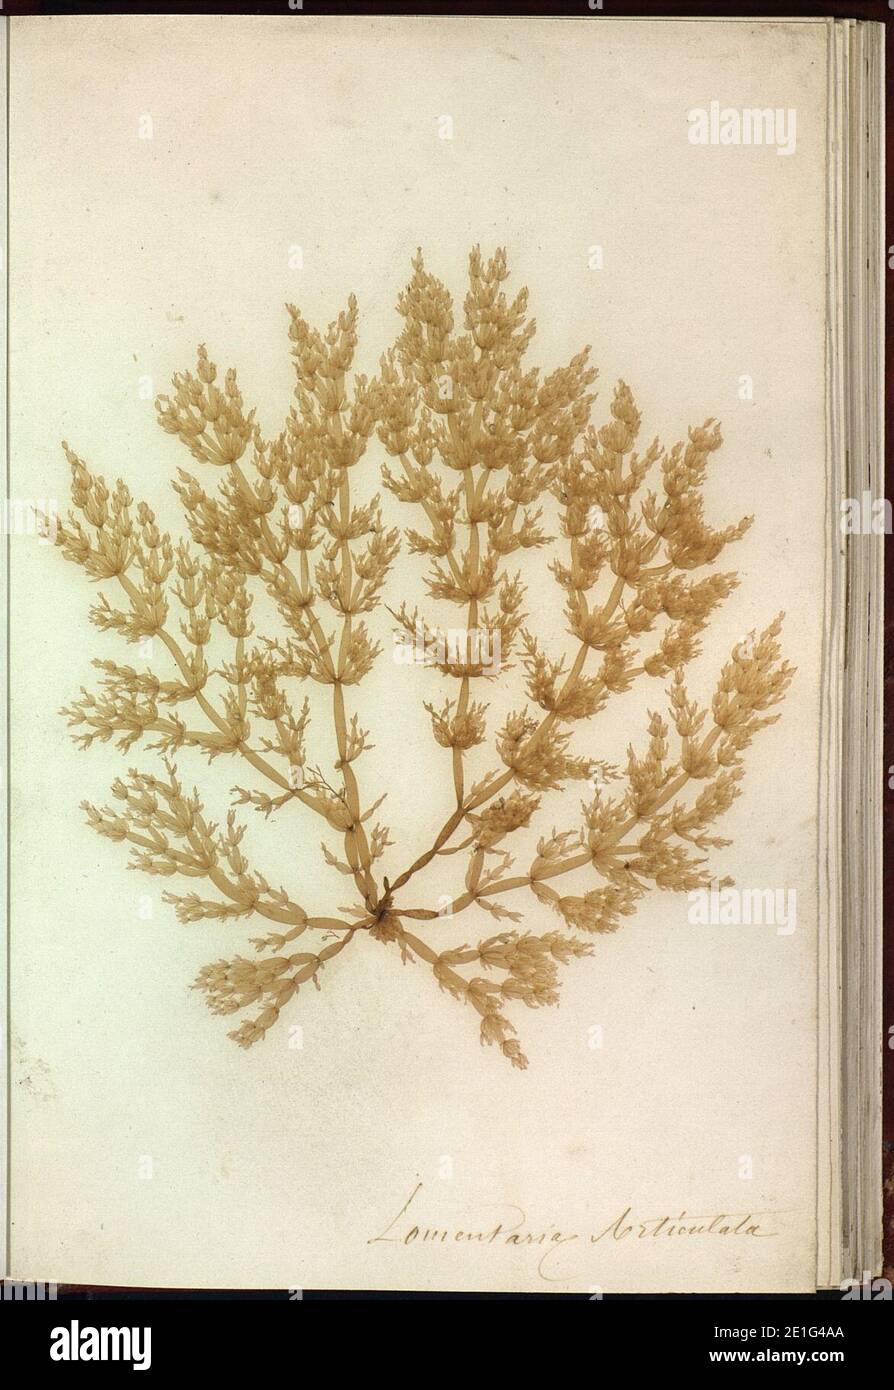 Lomentaria articulata Brest. Stock Photo